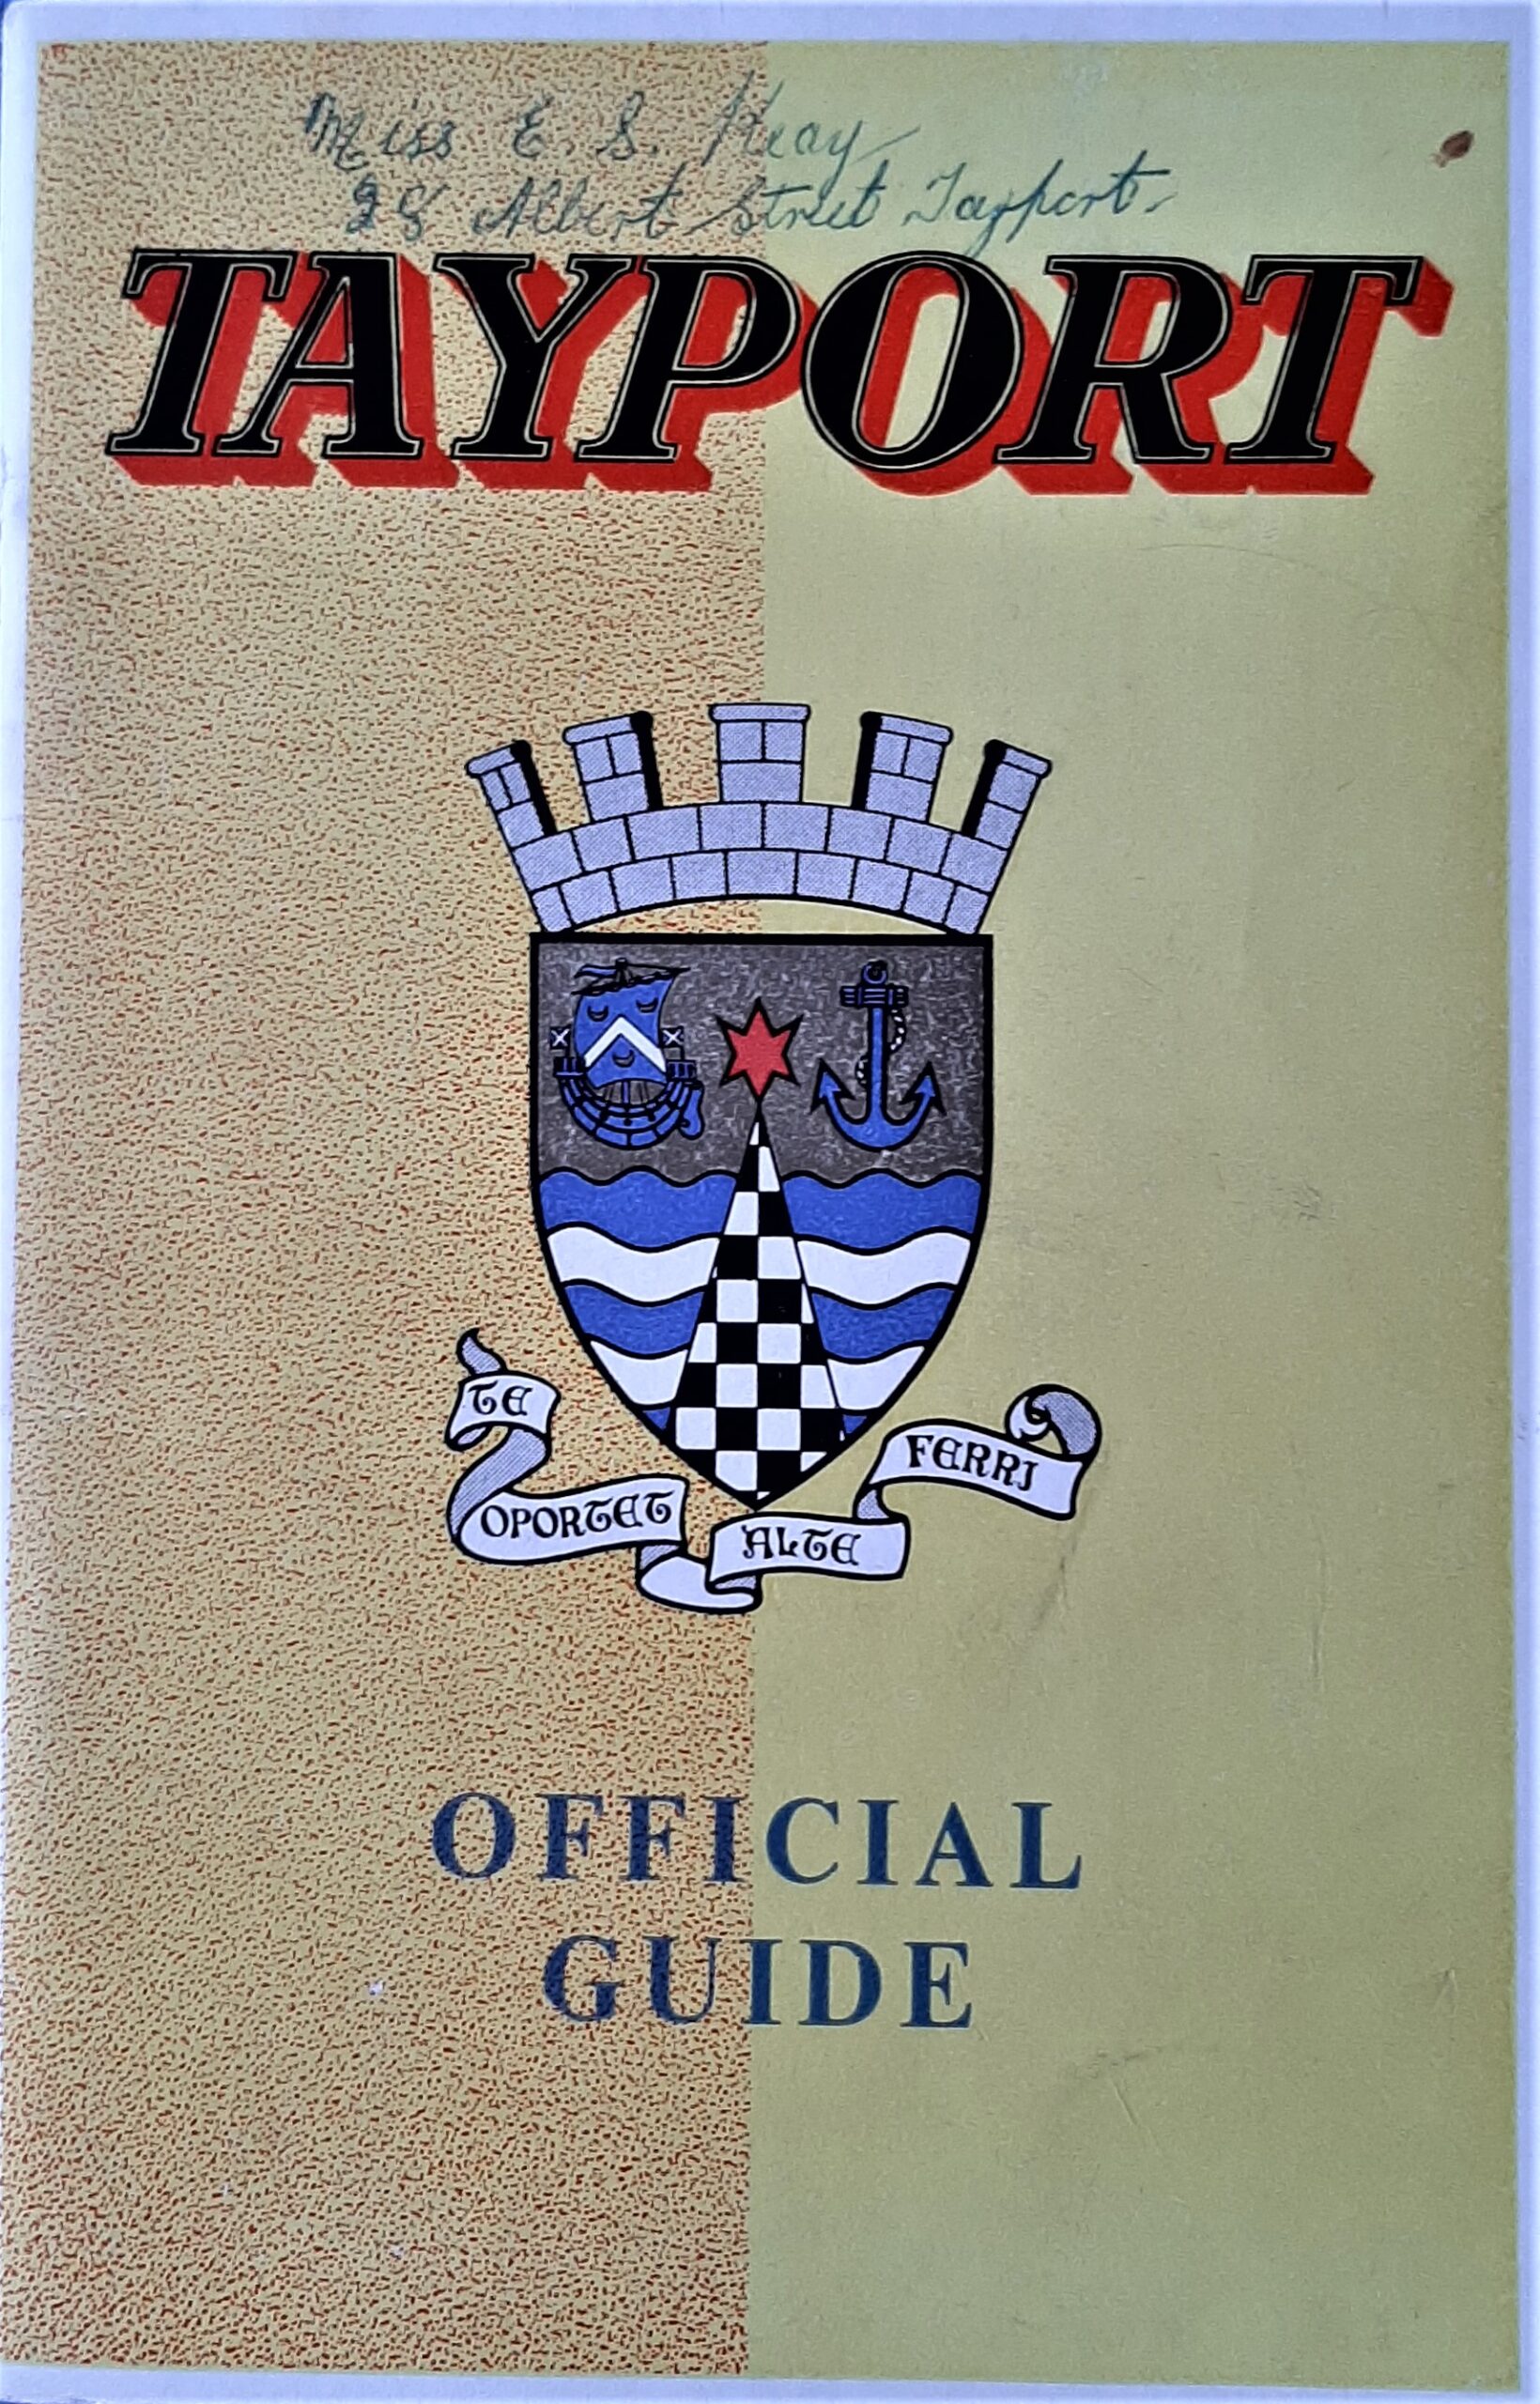 Tayport Guide: Provost John Garvie (late 1950s)